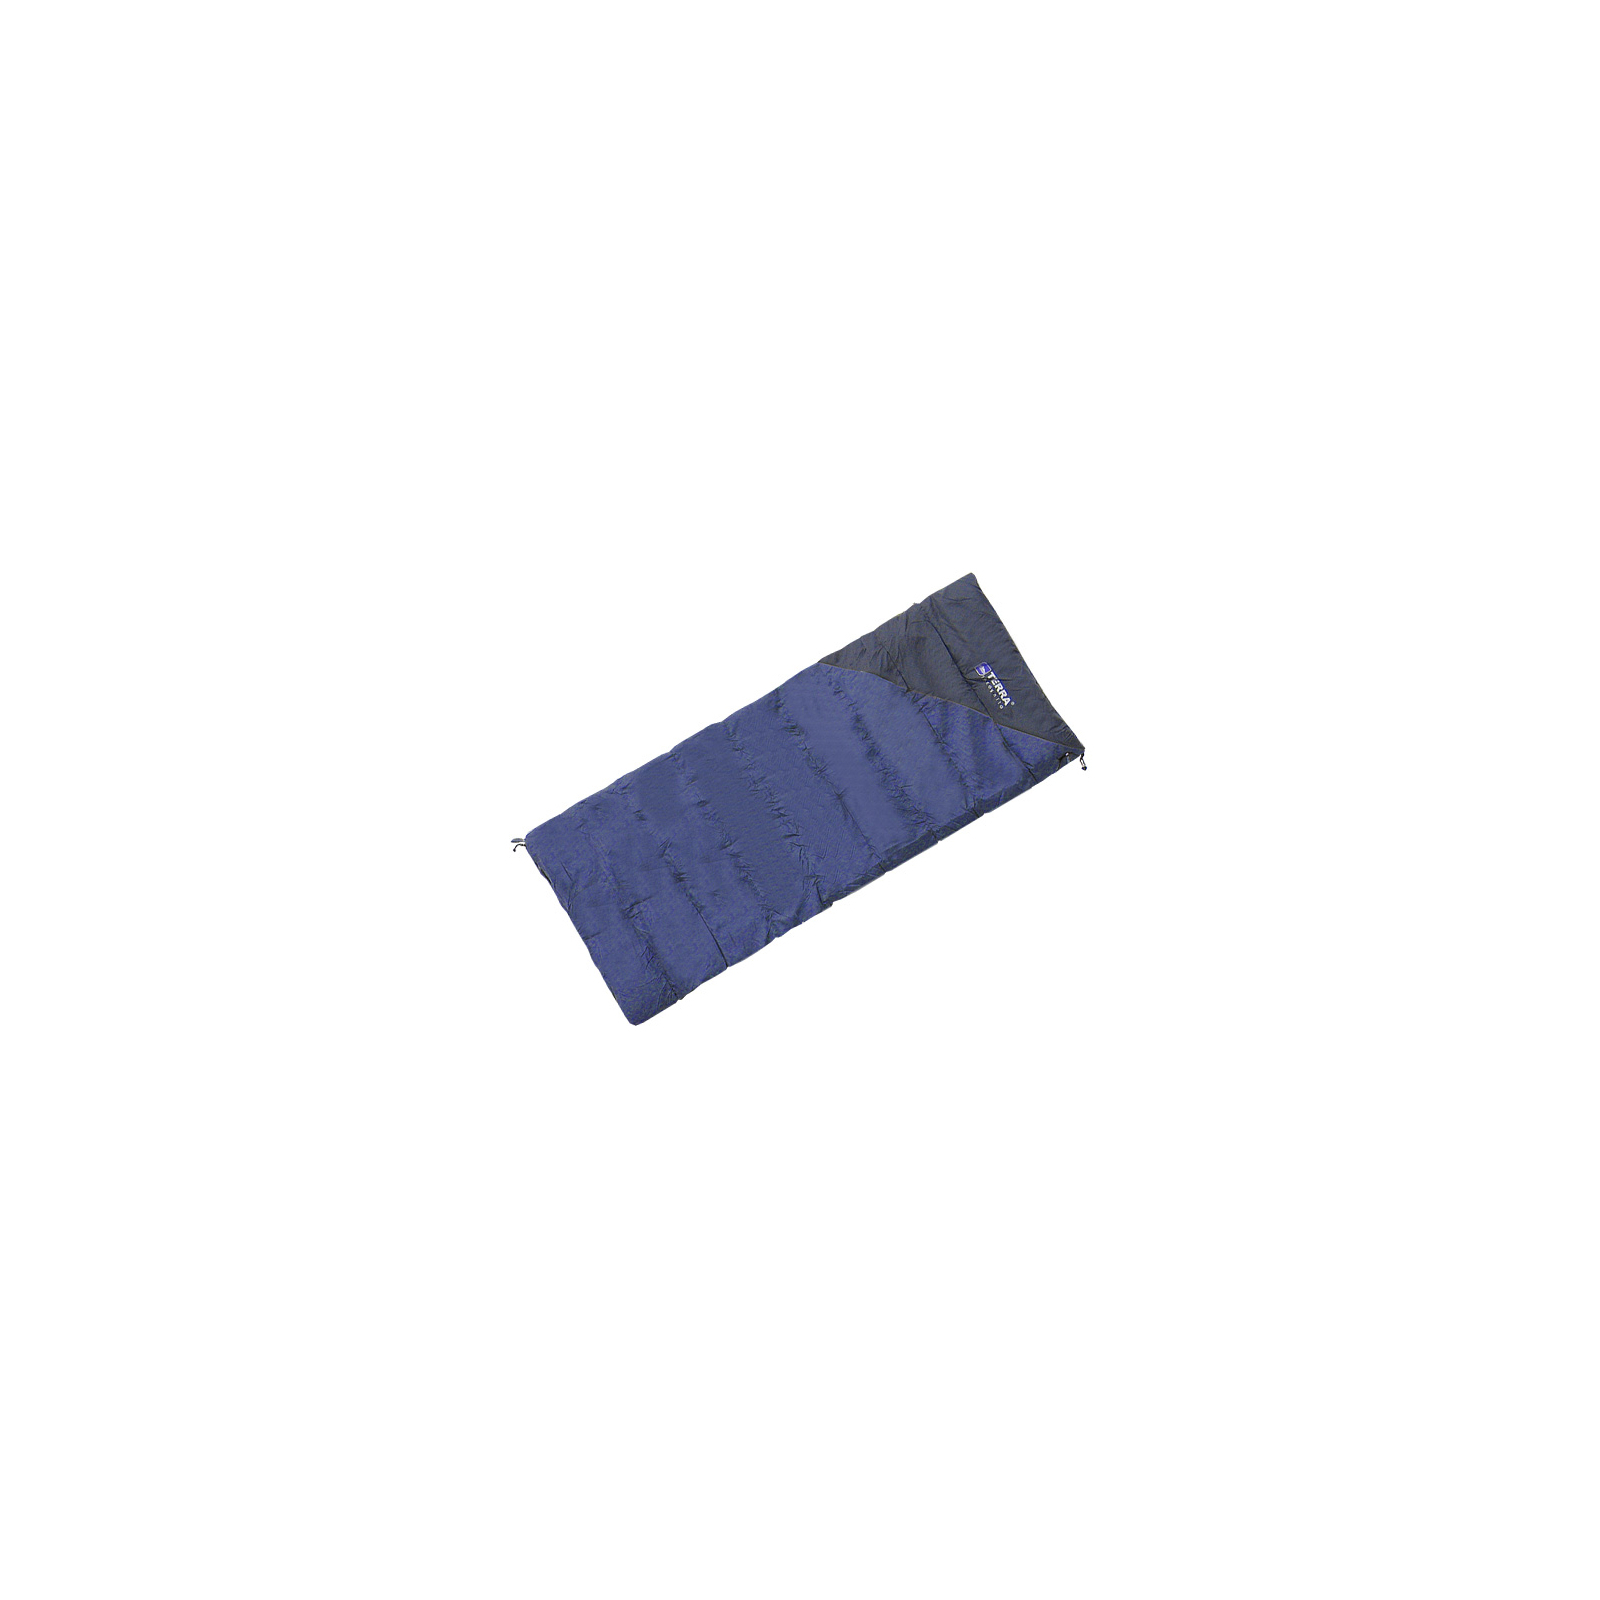 Спальный мешок Terra Incognita Campo 200 blue / gray (4823081502364)